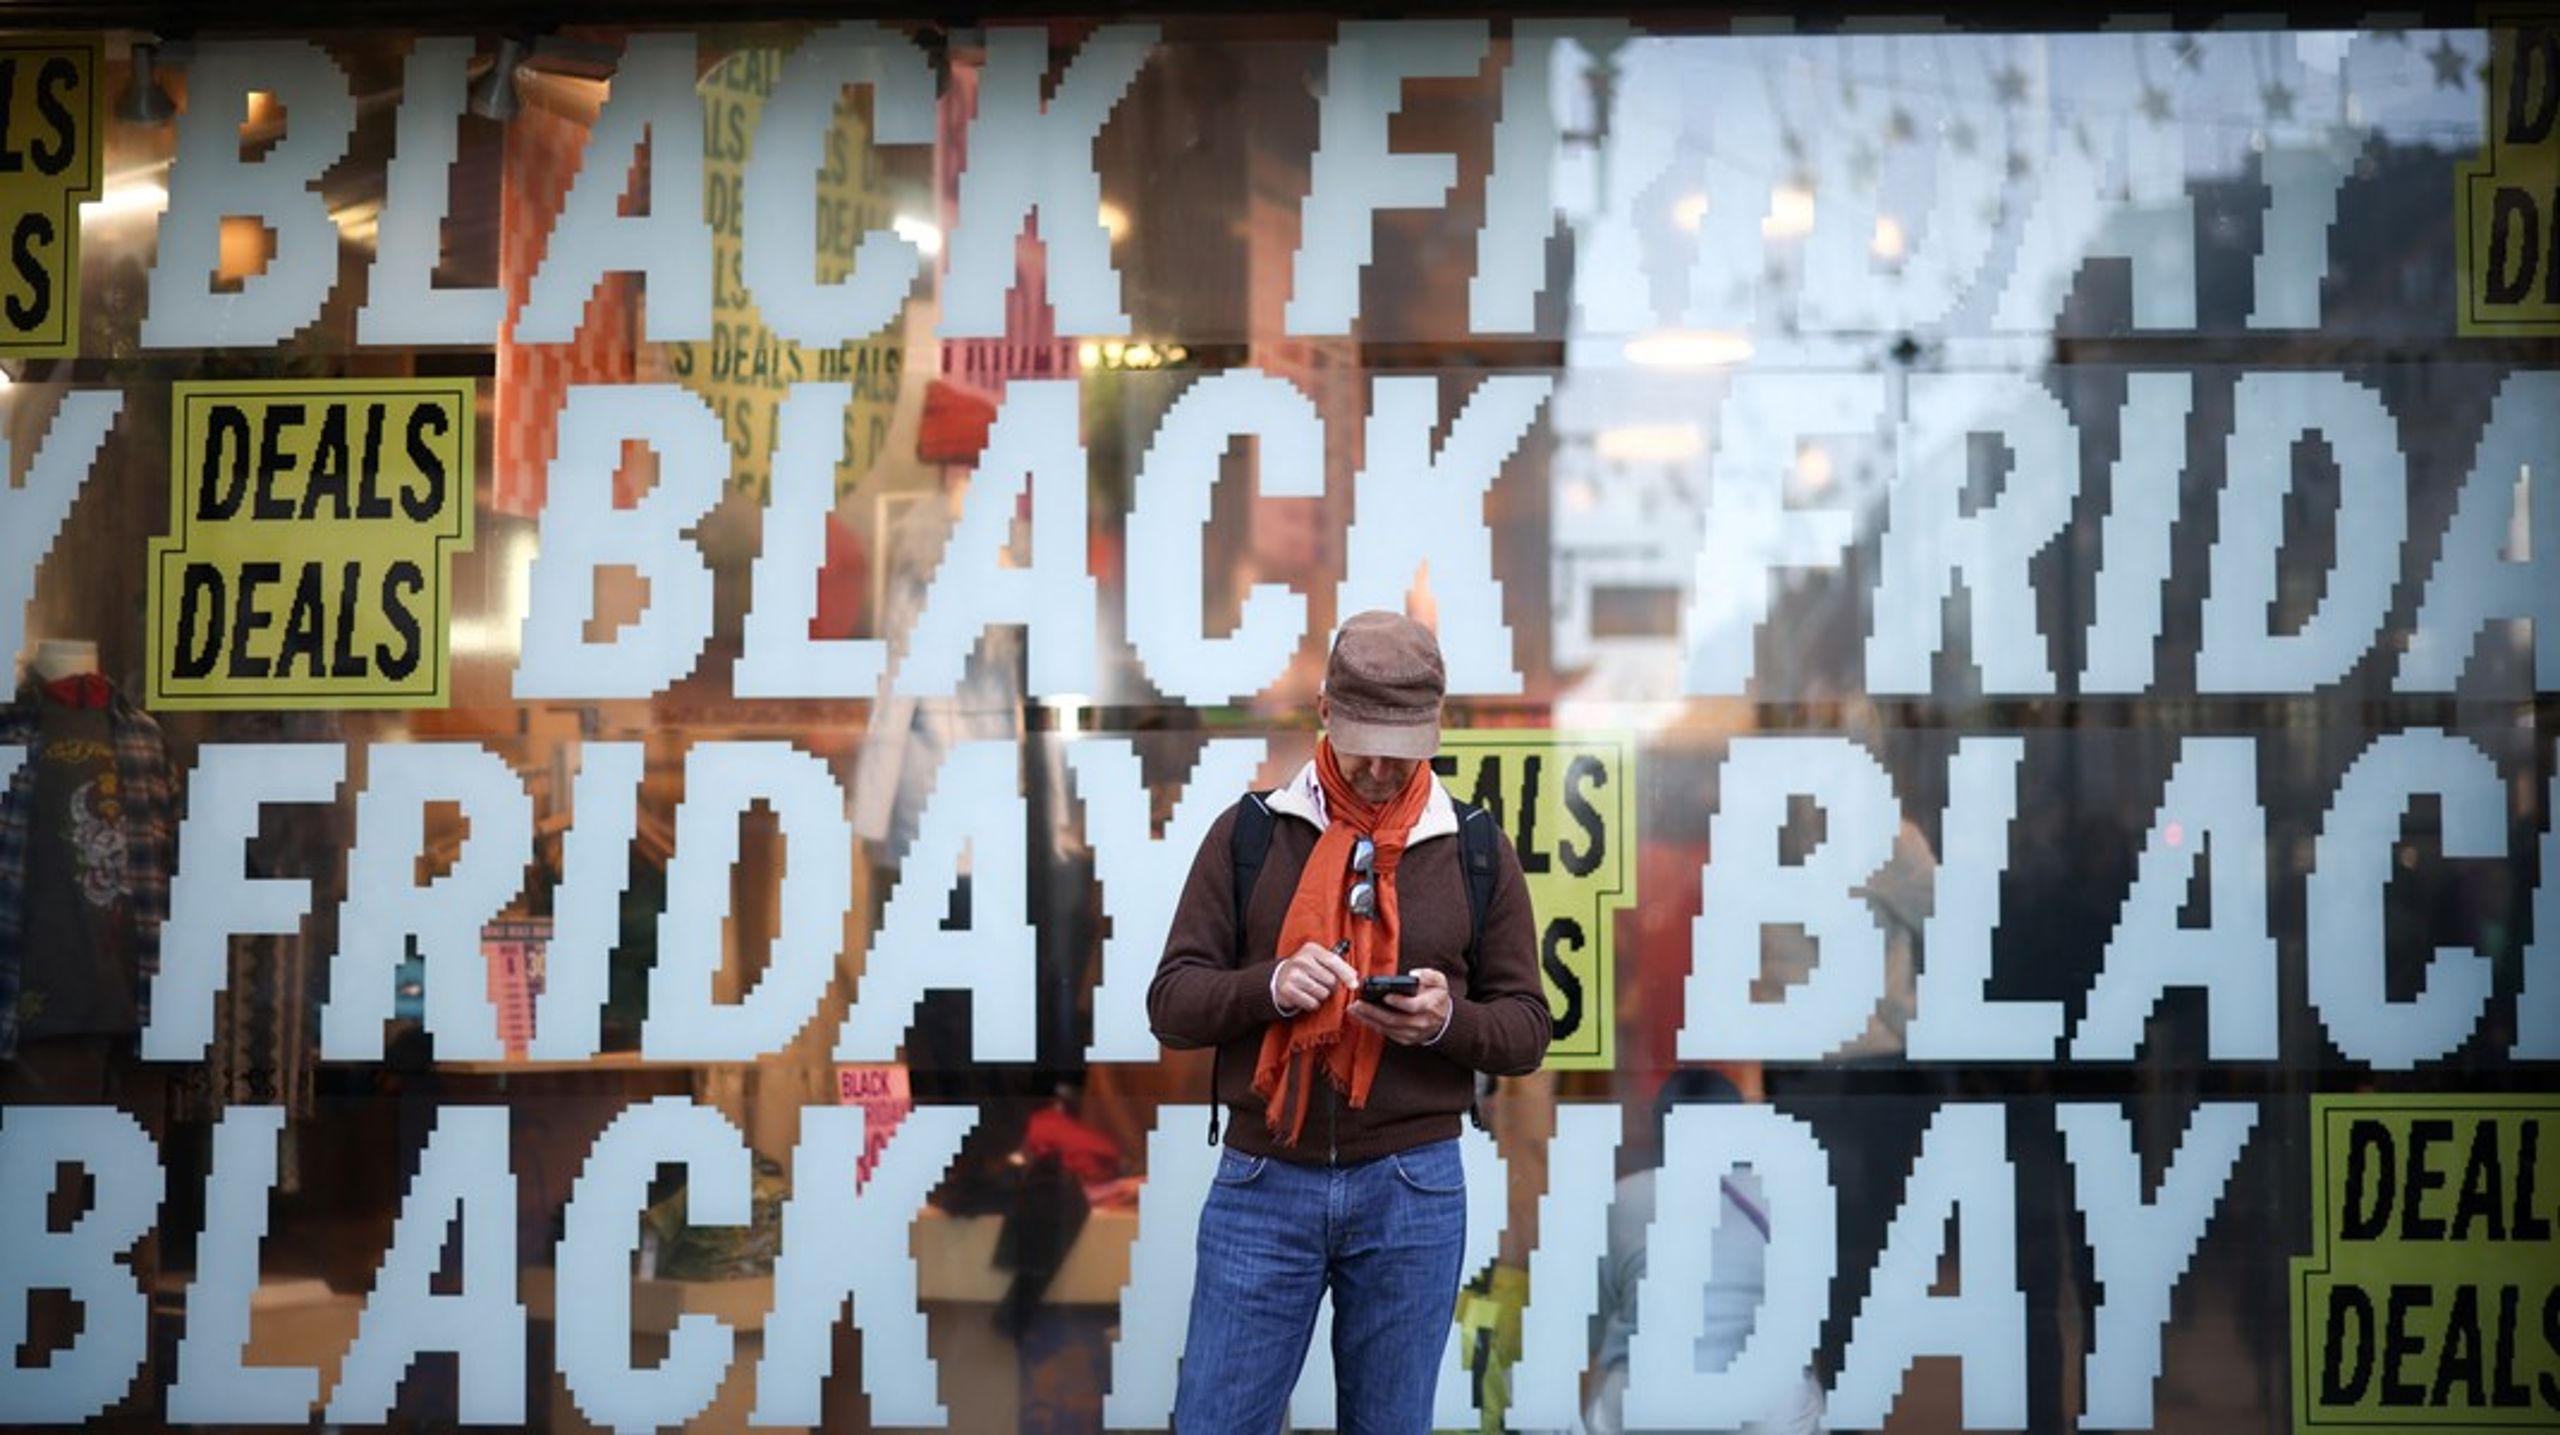 Black Friday er blevet en årlig forbrugerfest, hvor genstande i massevis sættes ned og øger købslyst og -handling. Det gavner hverken klimaet eller pengepungen.